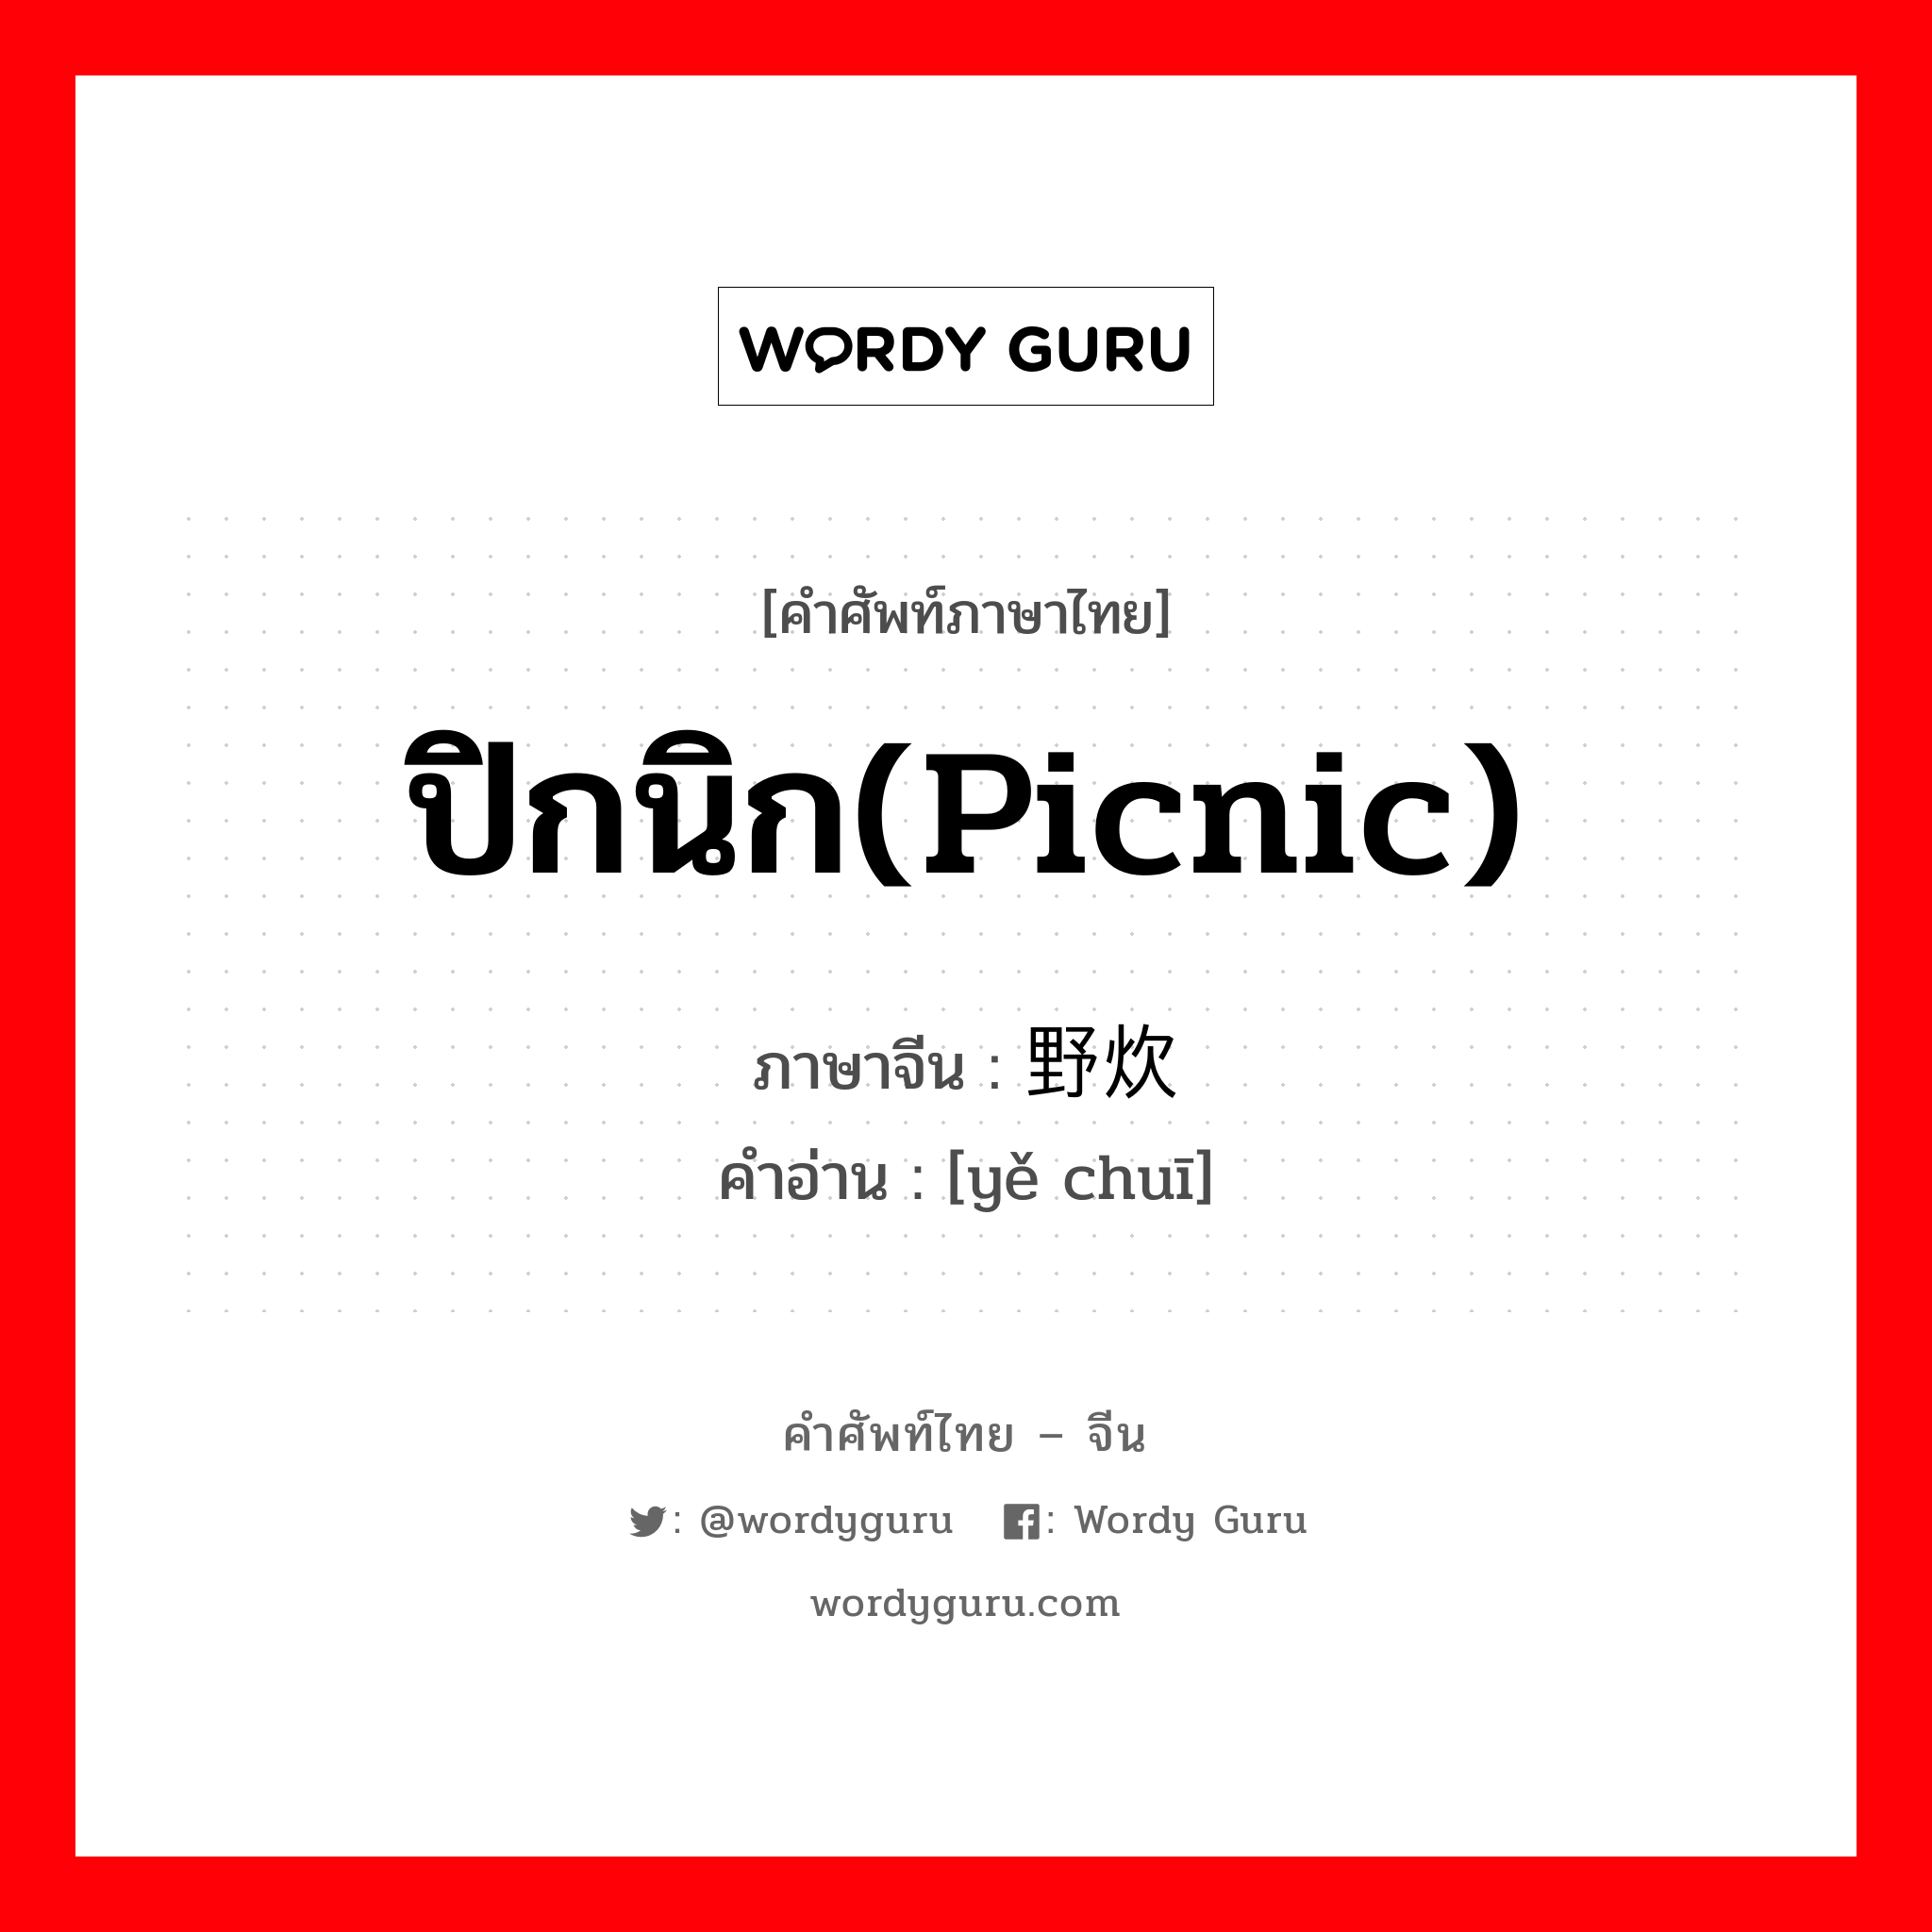 ปิกนิก(picnic) ภาษาจีนคืออะไร, คำศัพท์ภาษาไทย - จีน ปิกนิก(picnic) ภาษาจีน 野炊 คำอ่าน [yě chuī]